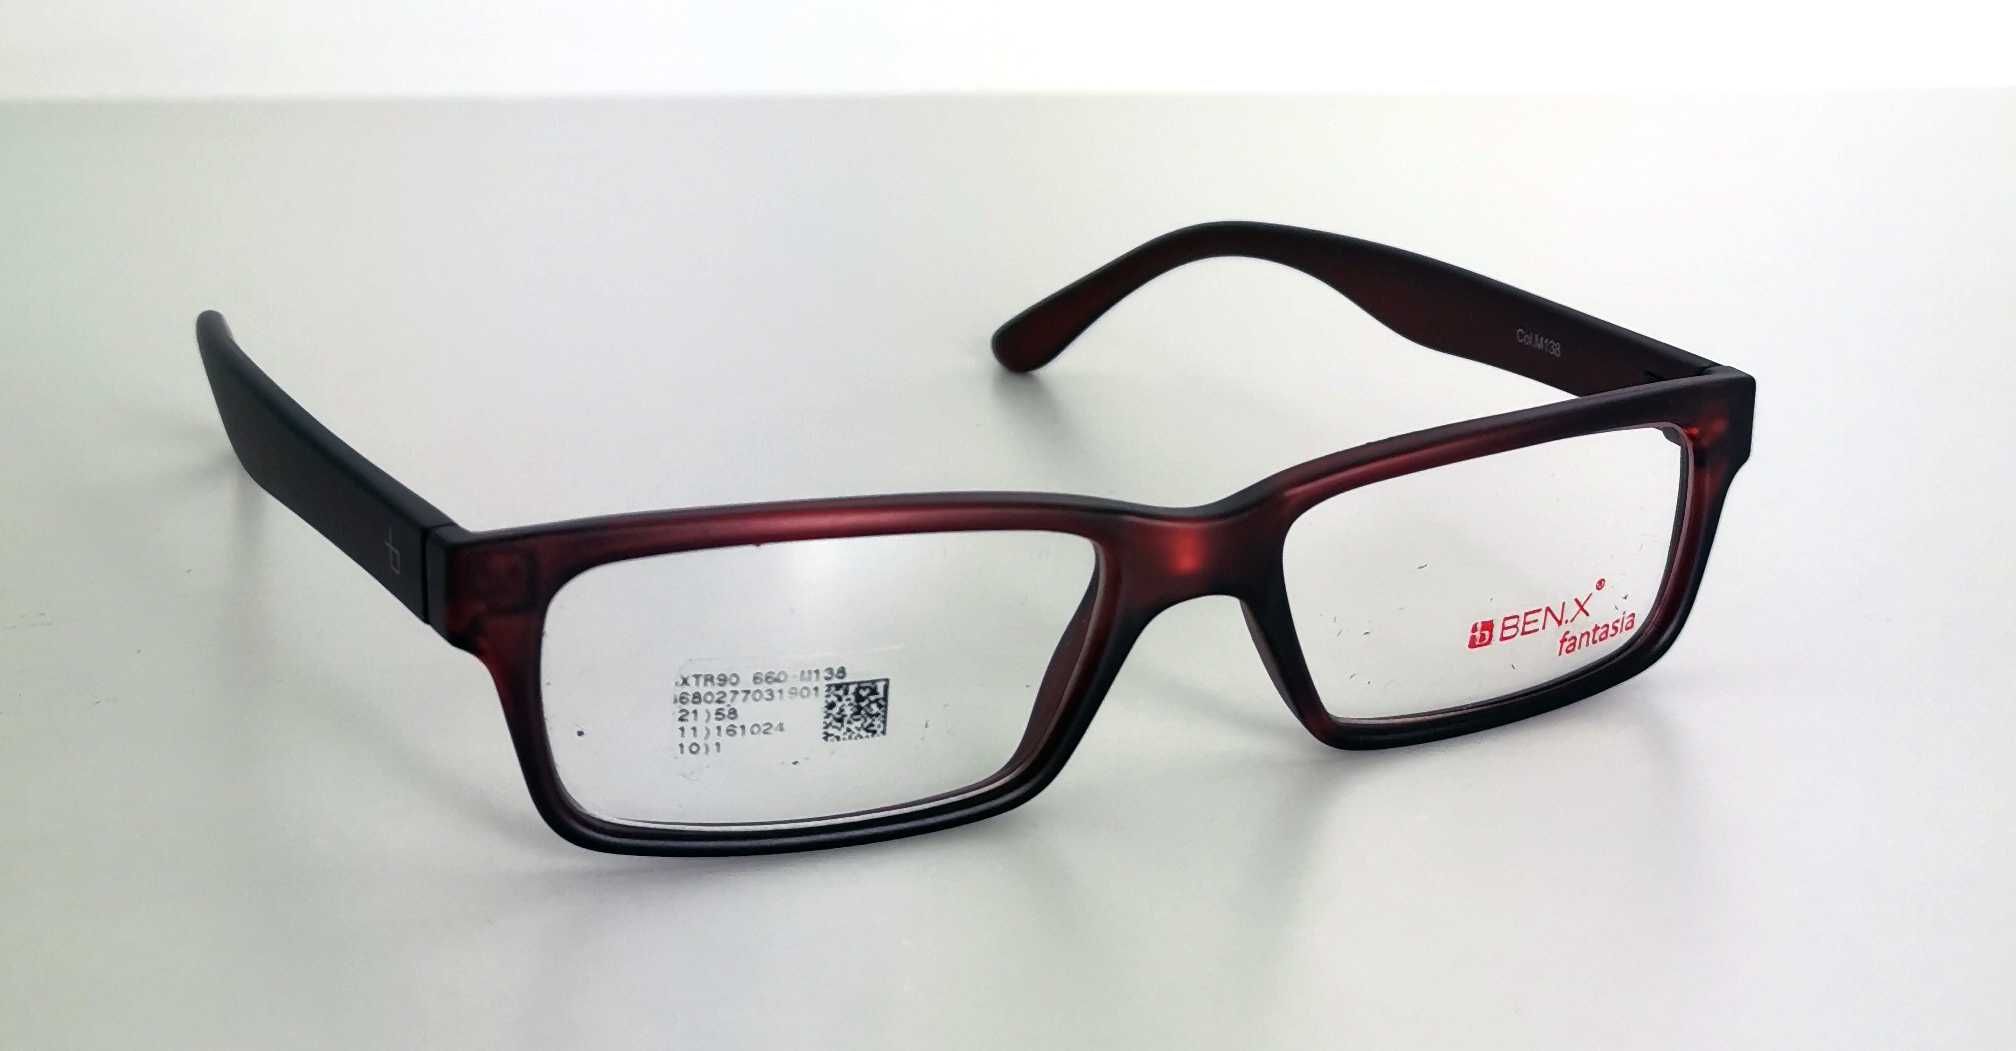 Oprawki do okularów BEN.X Okulary korekcyjne - OKAZJA NAJTANIEJ